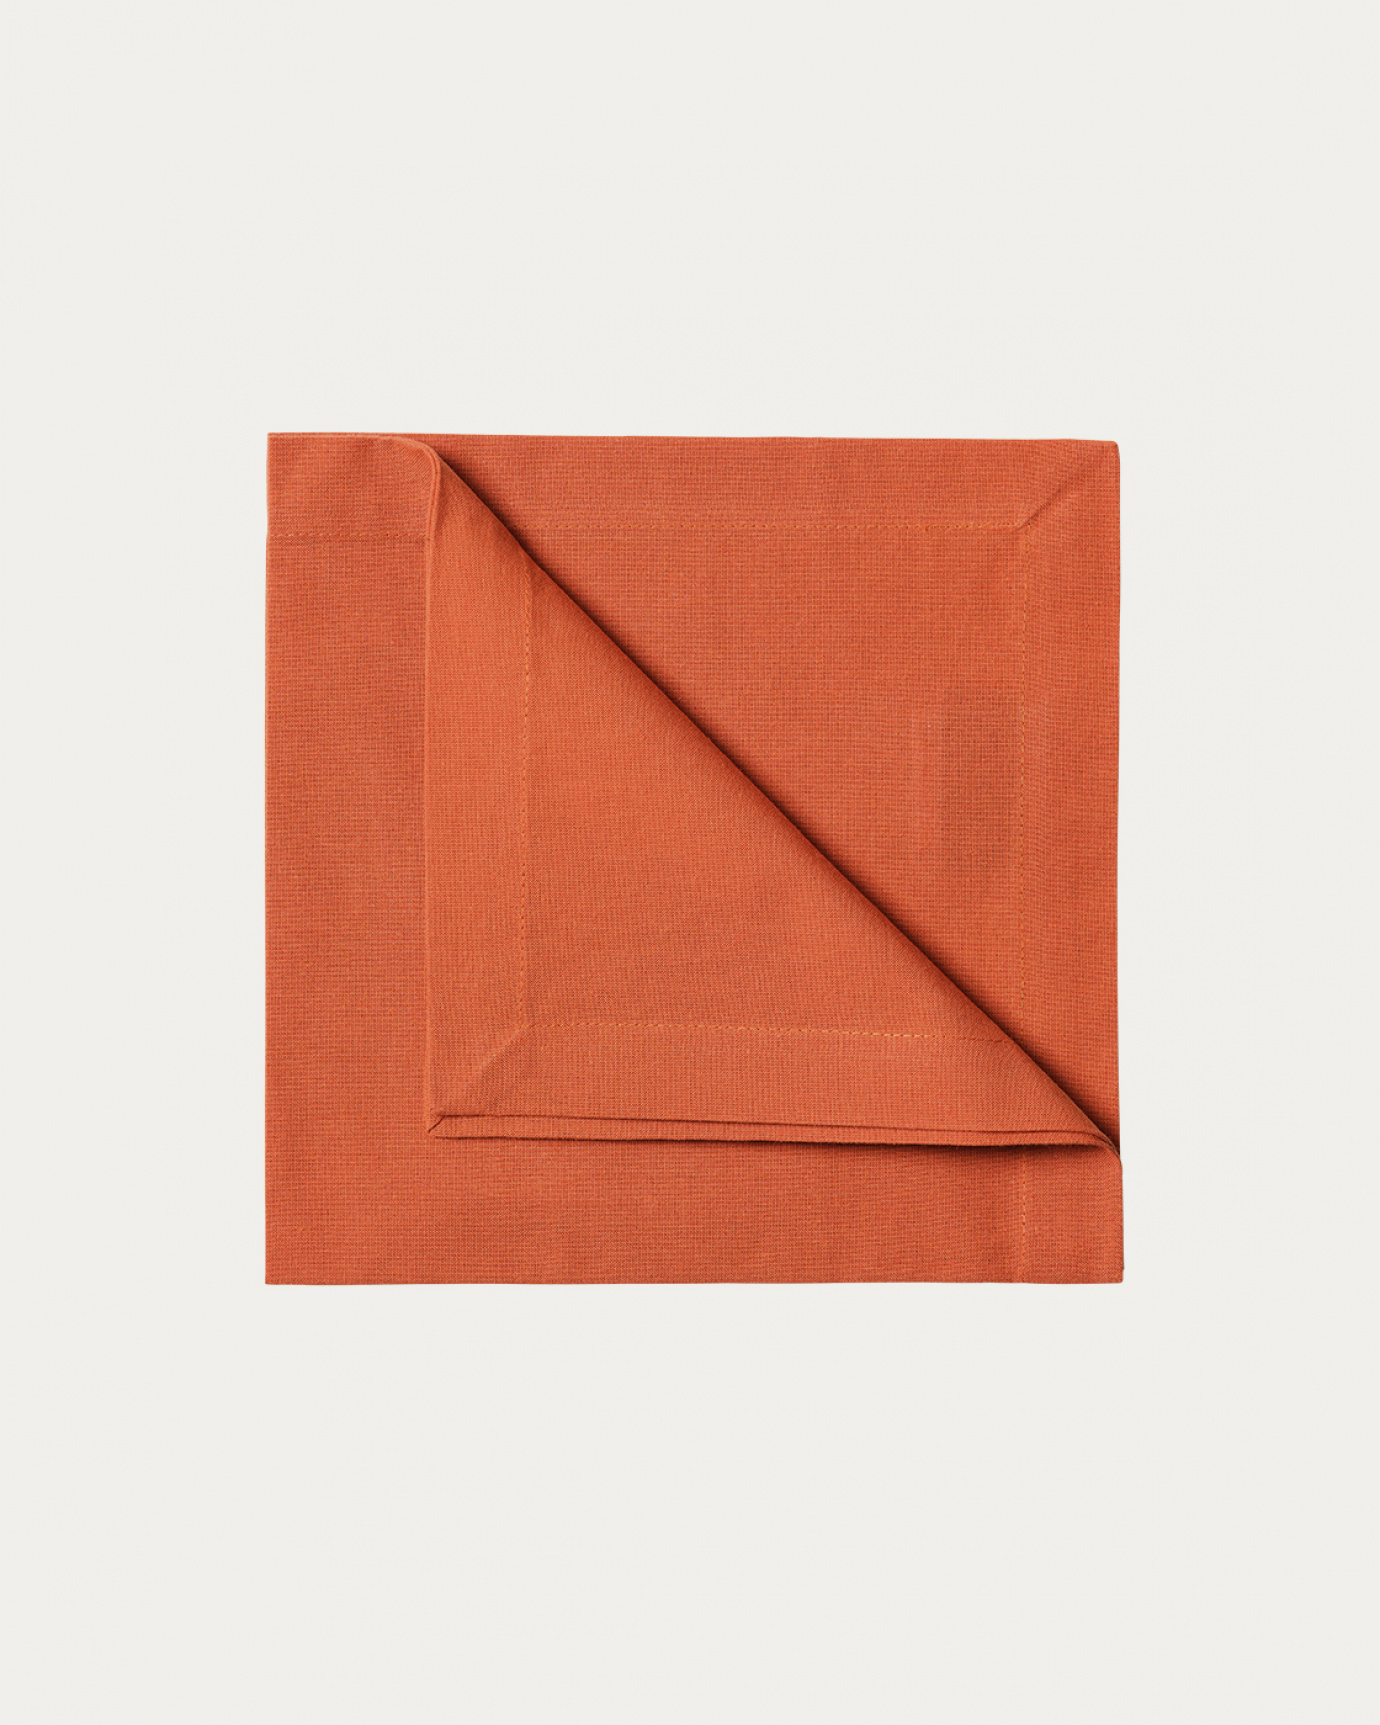 Immagine prodotto arancio arrugginito ROBERT tovagliolo in morbido cotone di LINUM DESIGN. Dimensioni 45x45 cm e venduto in 4-pezzi.